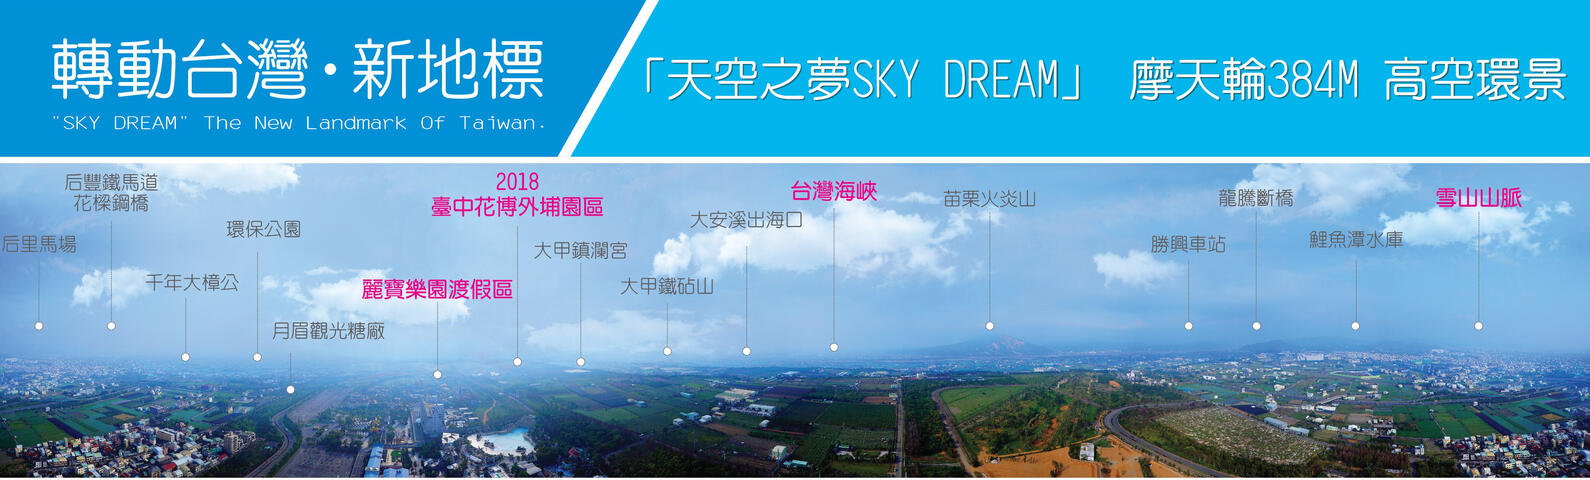 天空之夢Sky  Dream